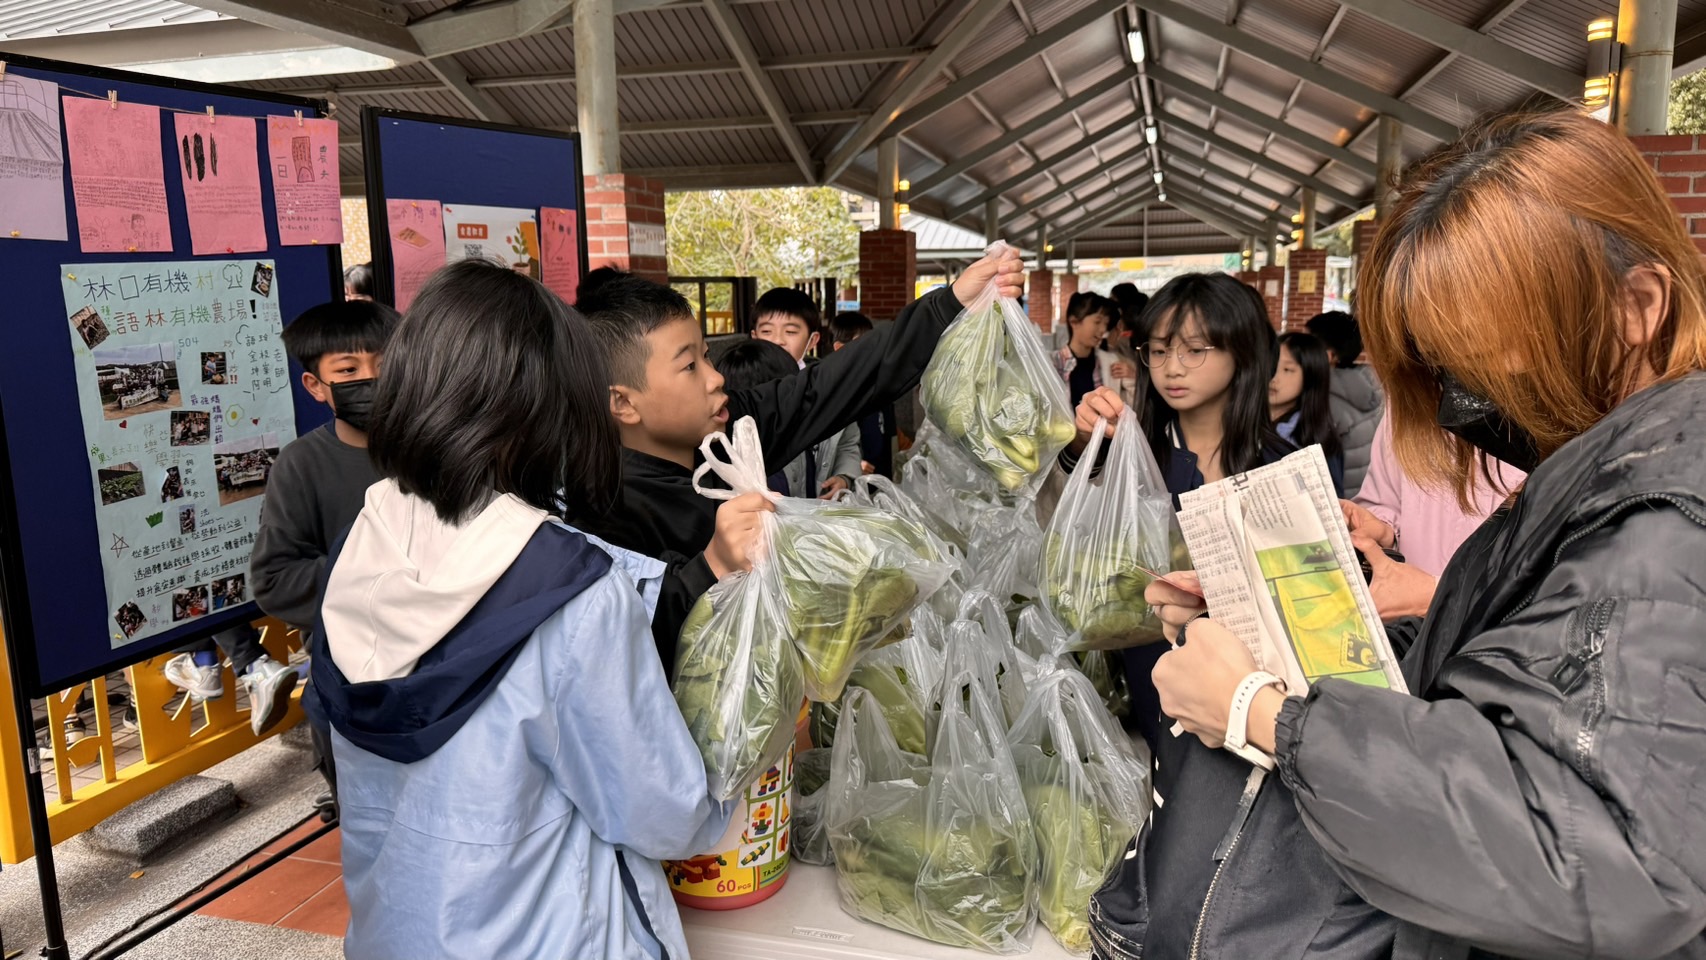 新林國小5年級學生利用放學期間進行義賣活動，所得將捐助給轄區內社福機構